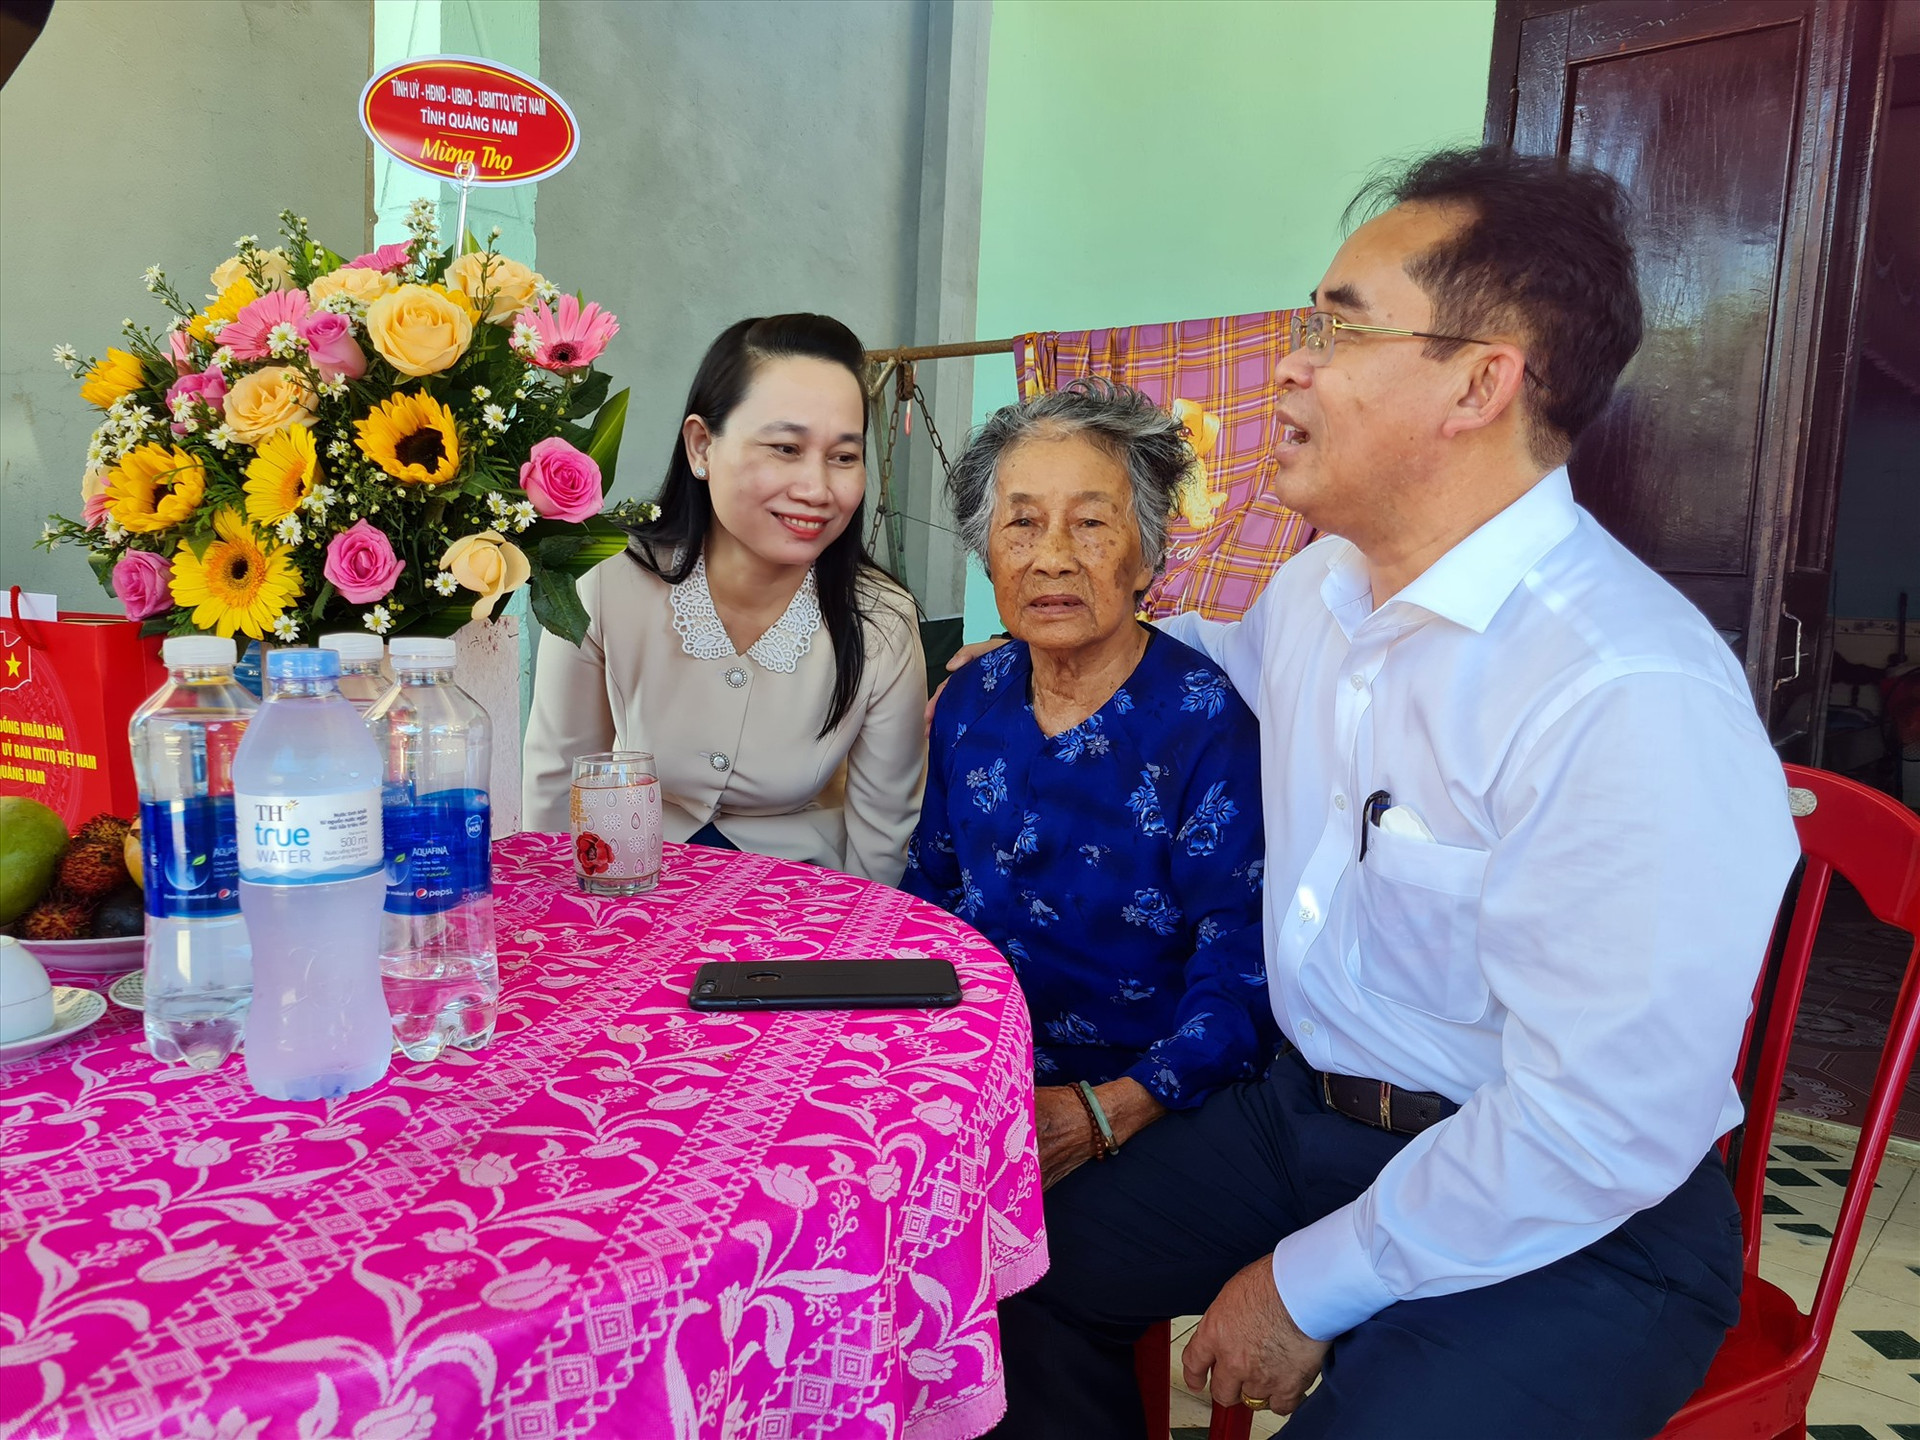 Phó Chủ tịch UBND tỉnh Trần Anh Tuấn trong lần đến thăm người cao tuổi cũng là người có công tại huyện Bắc Trà My. Ảnh: D.L